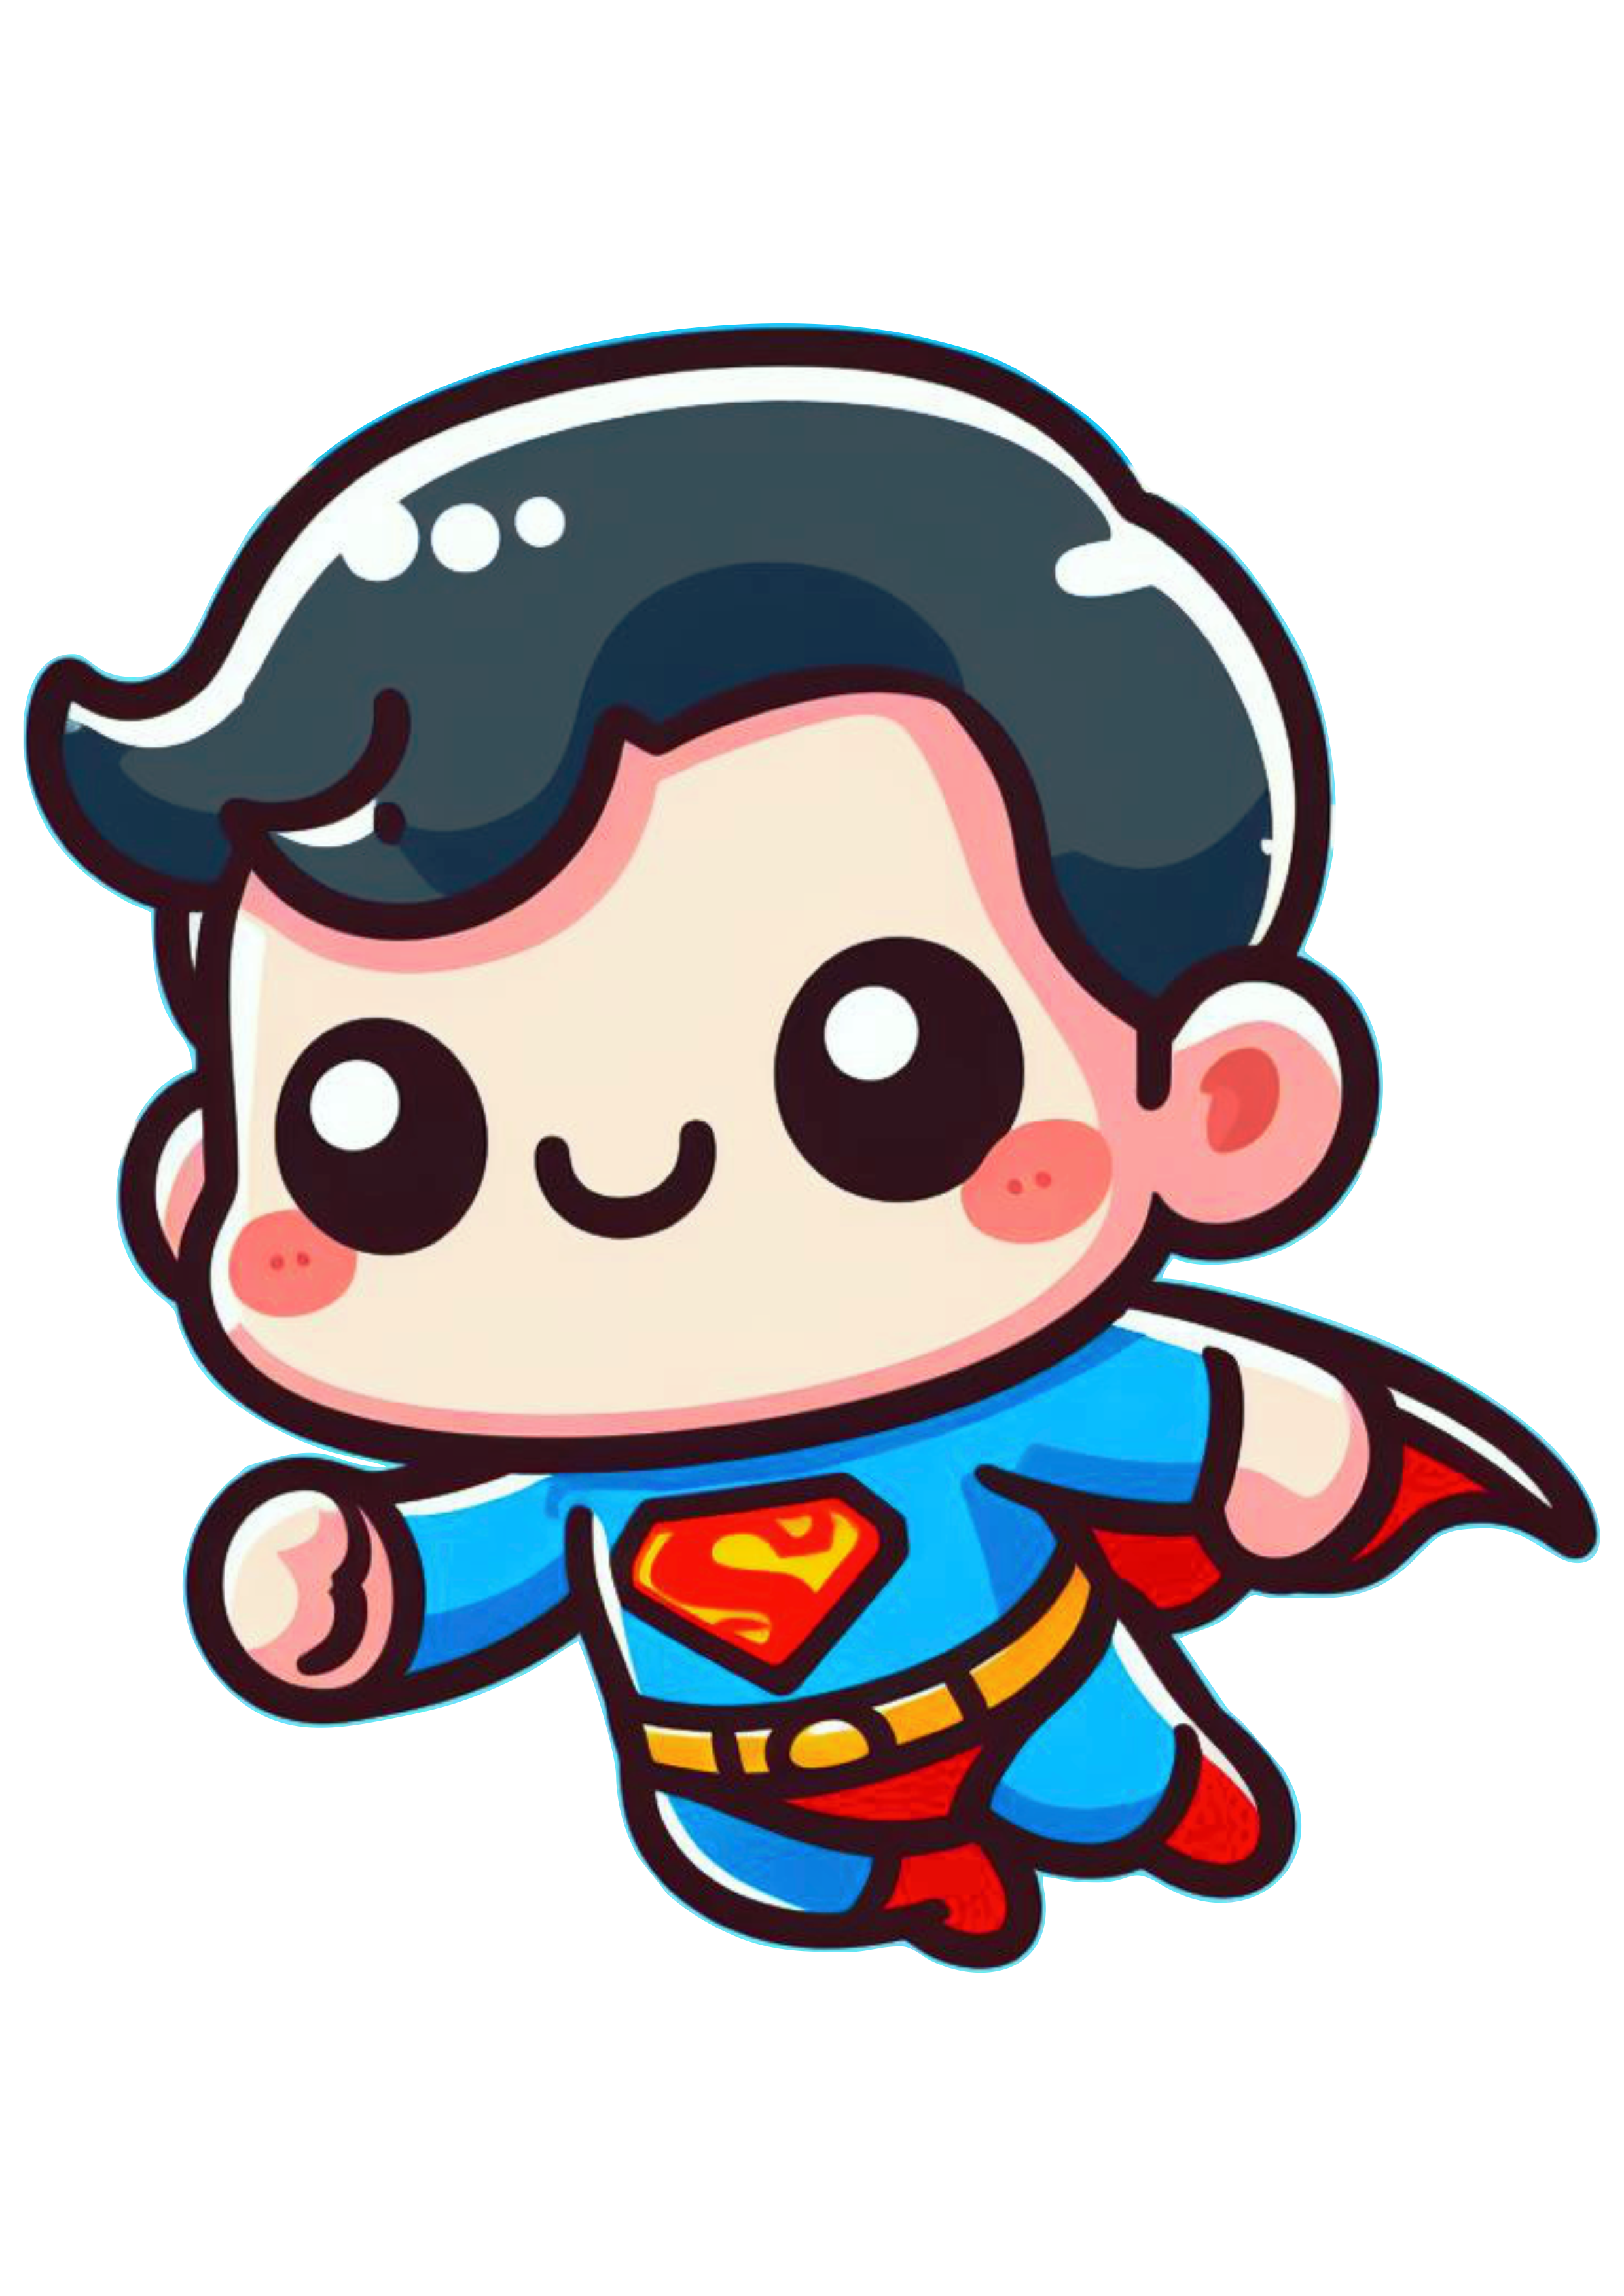 Super homem voando chibi fofinho cute superman heroi fantasia dc universe ilustração png